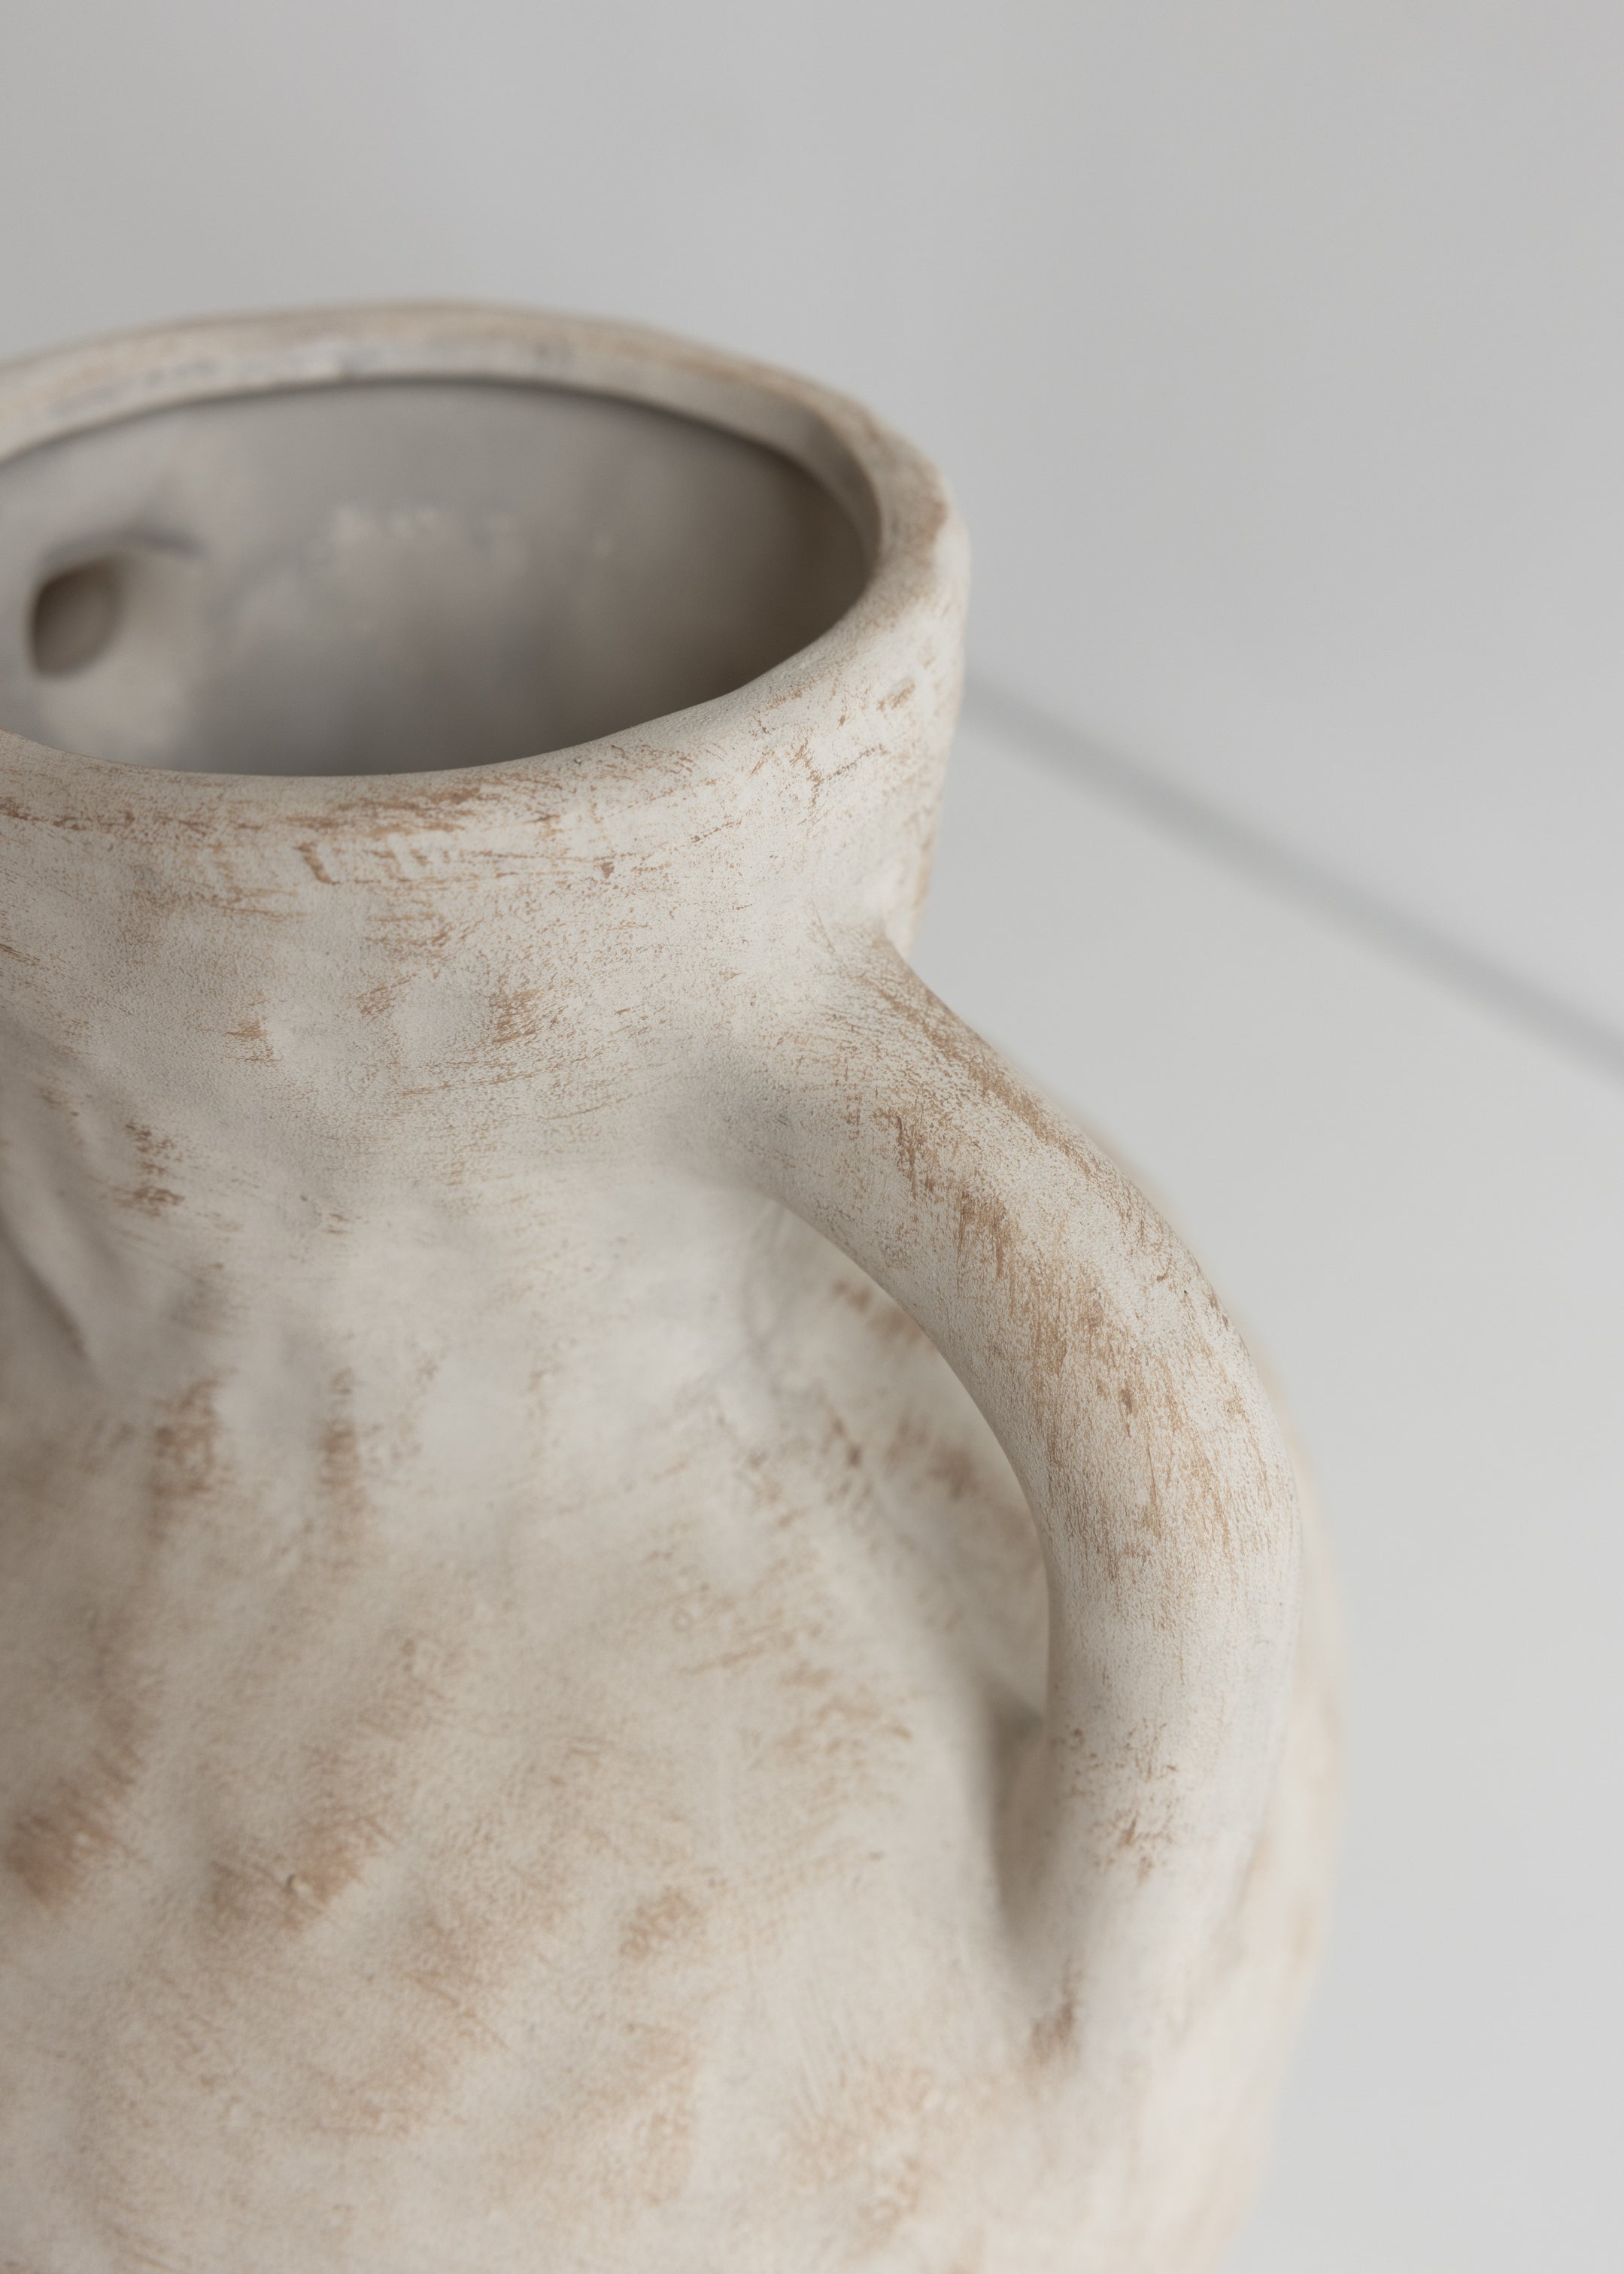 Rustic Ceramic Vase with Handles